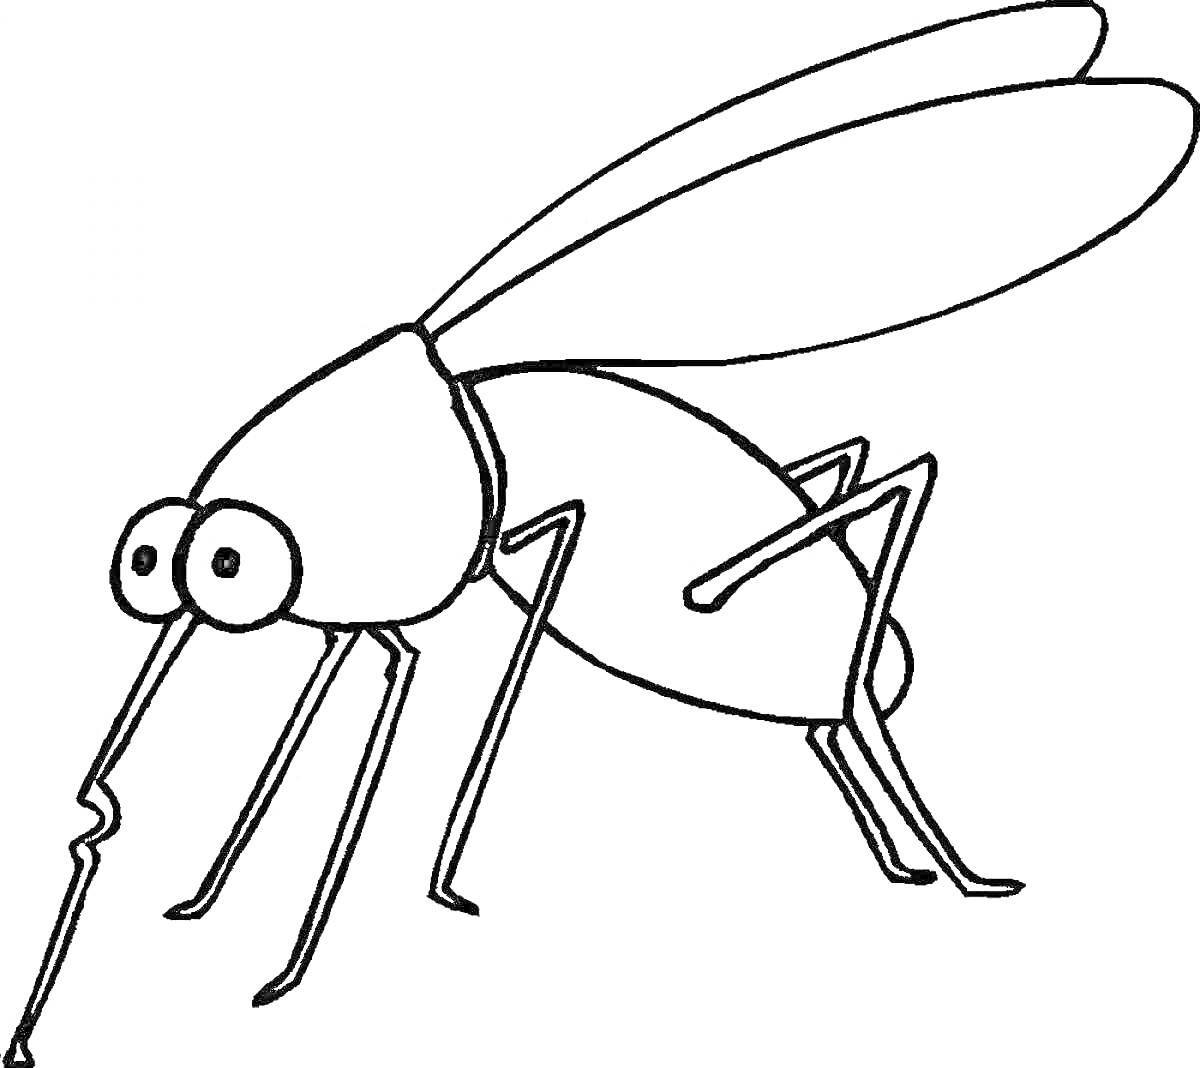 Раскраска Комар с большими глазами и длинными лапами